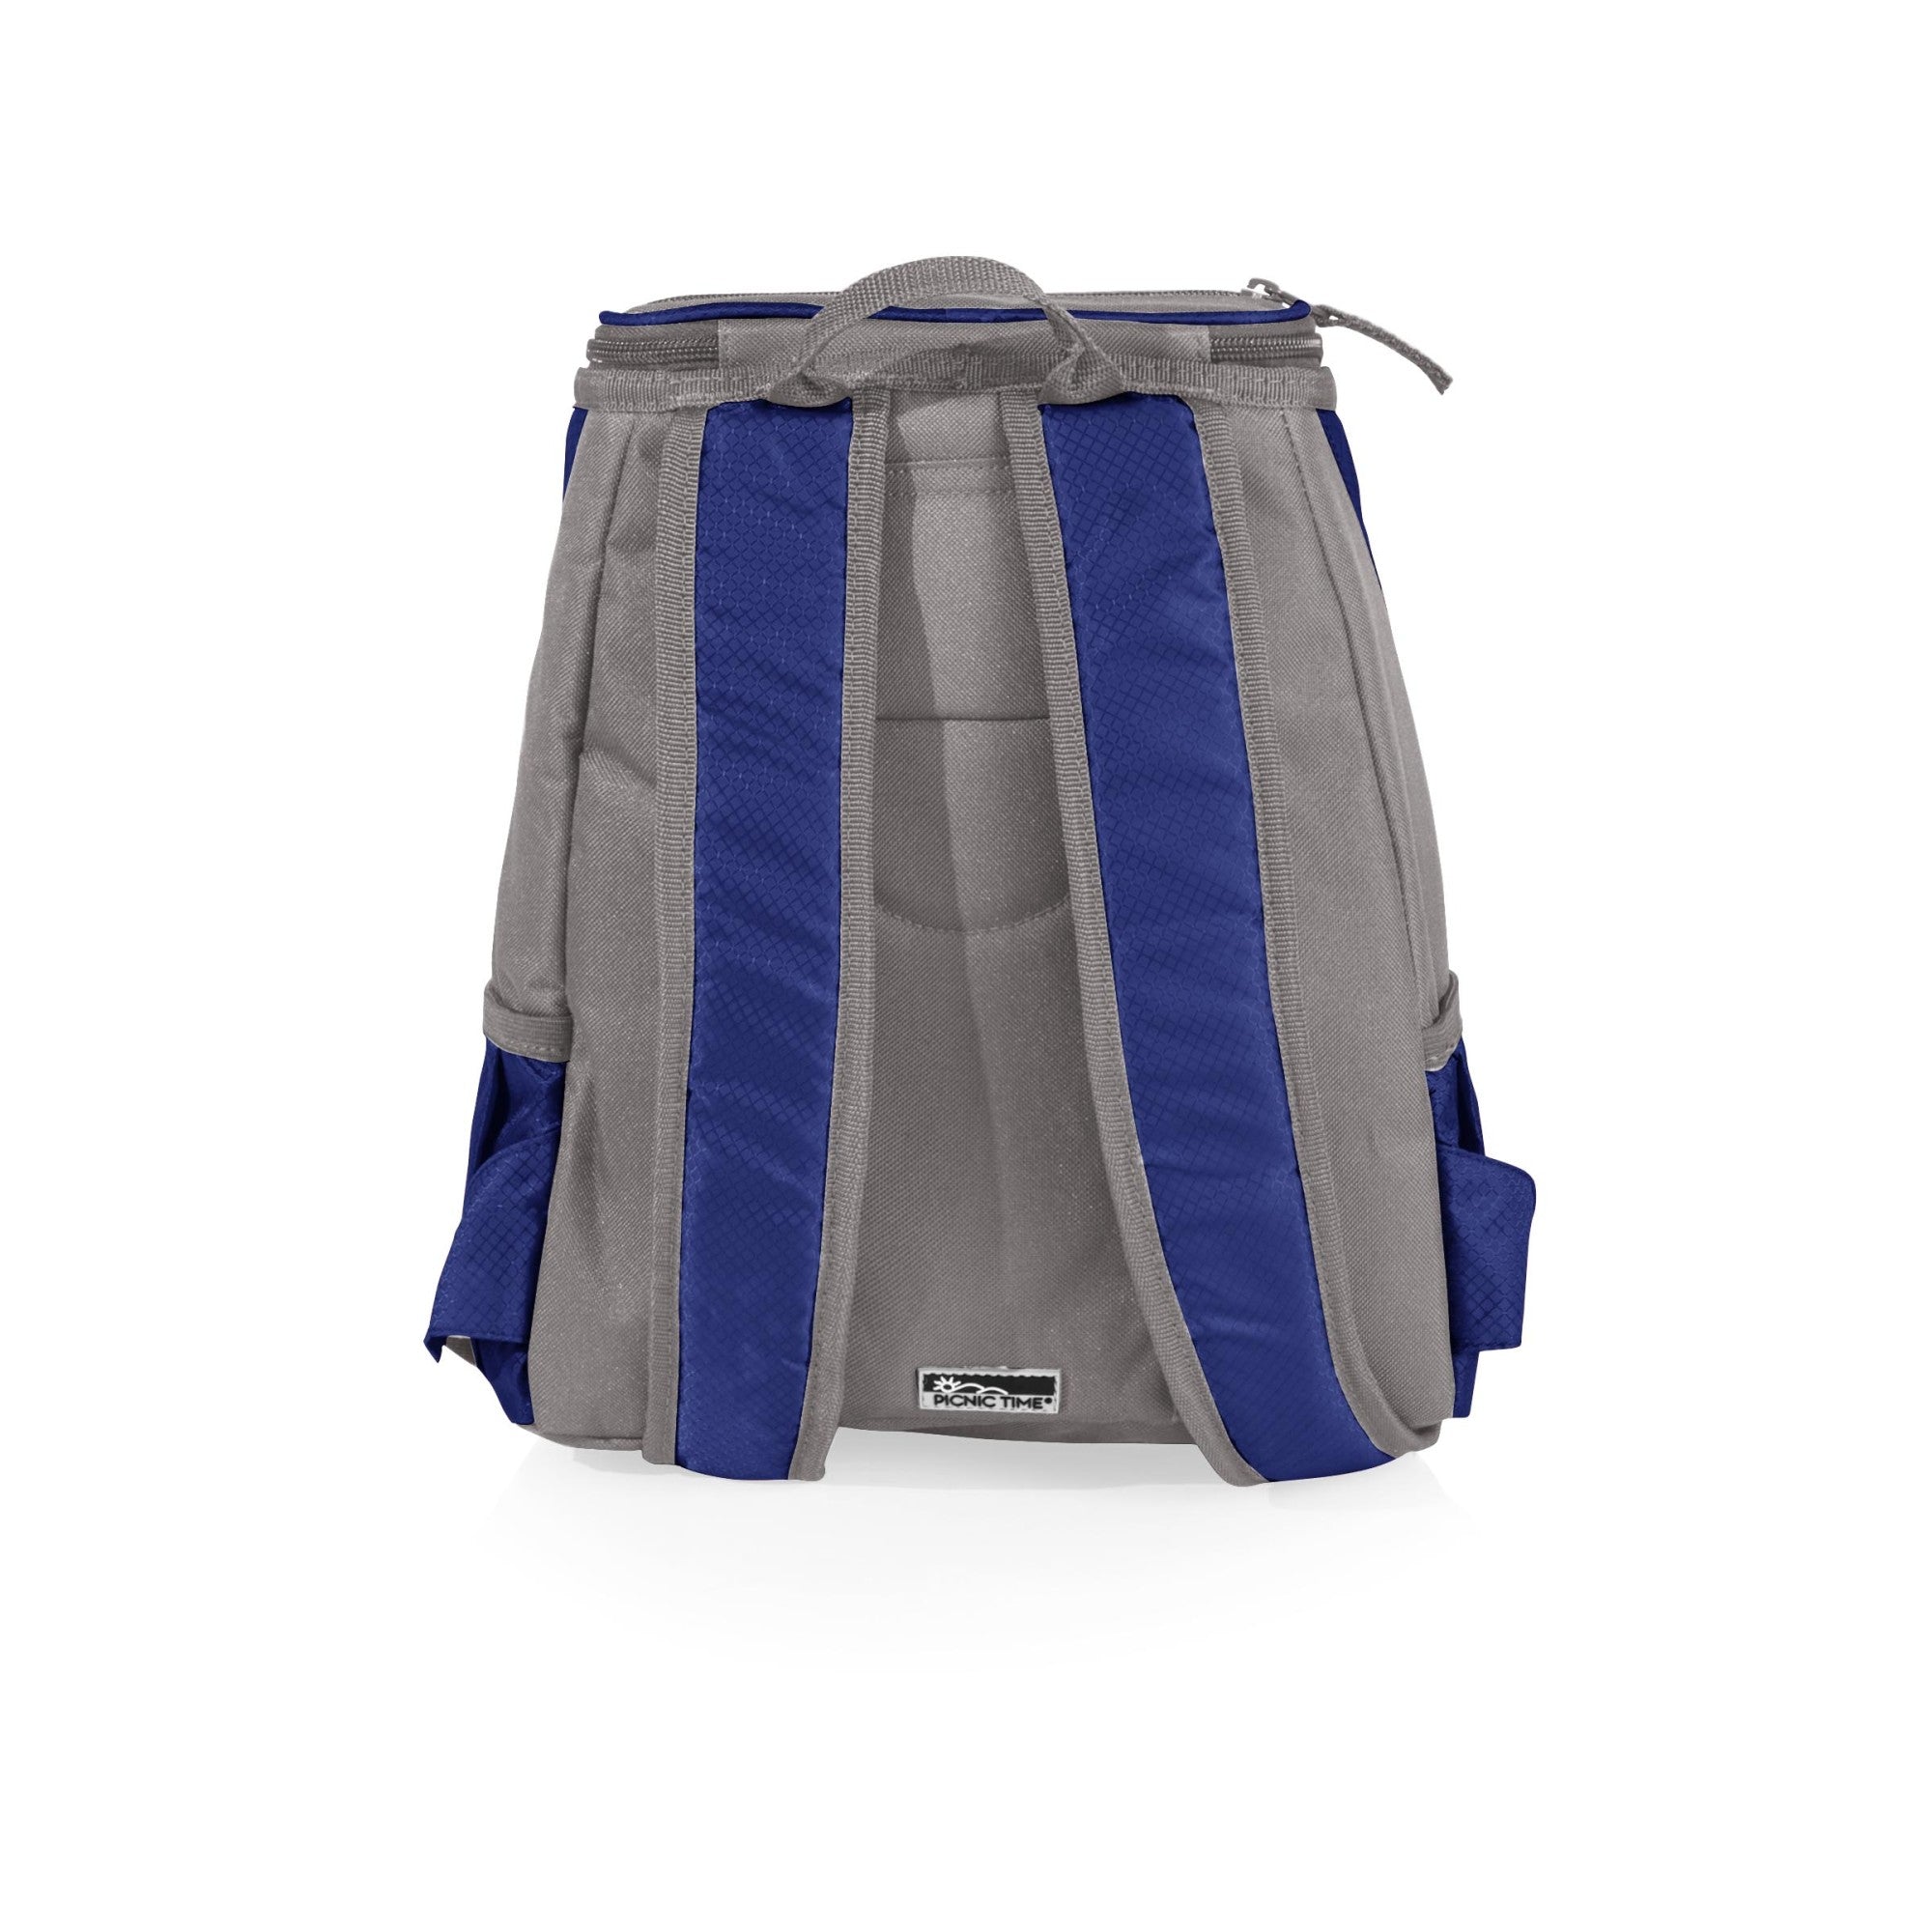 Tampa Bay Lightning - PTX Backpack Cooler